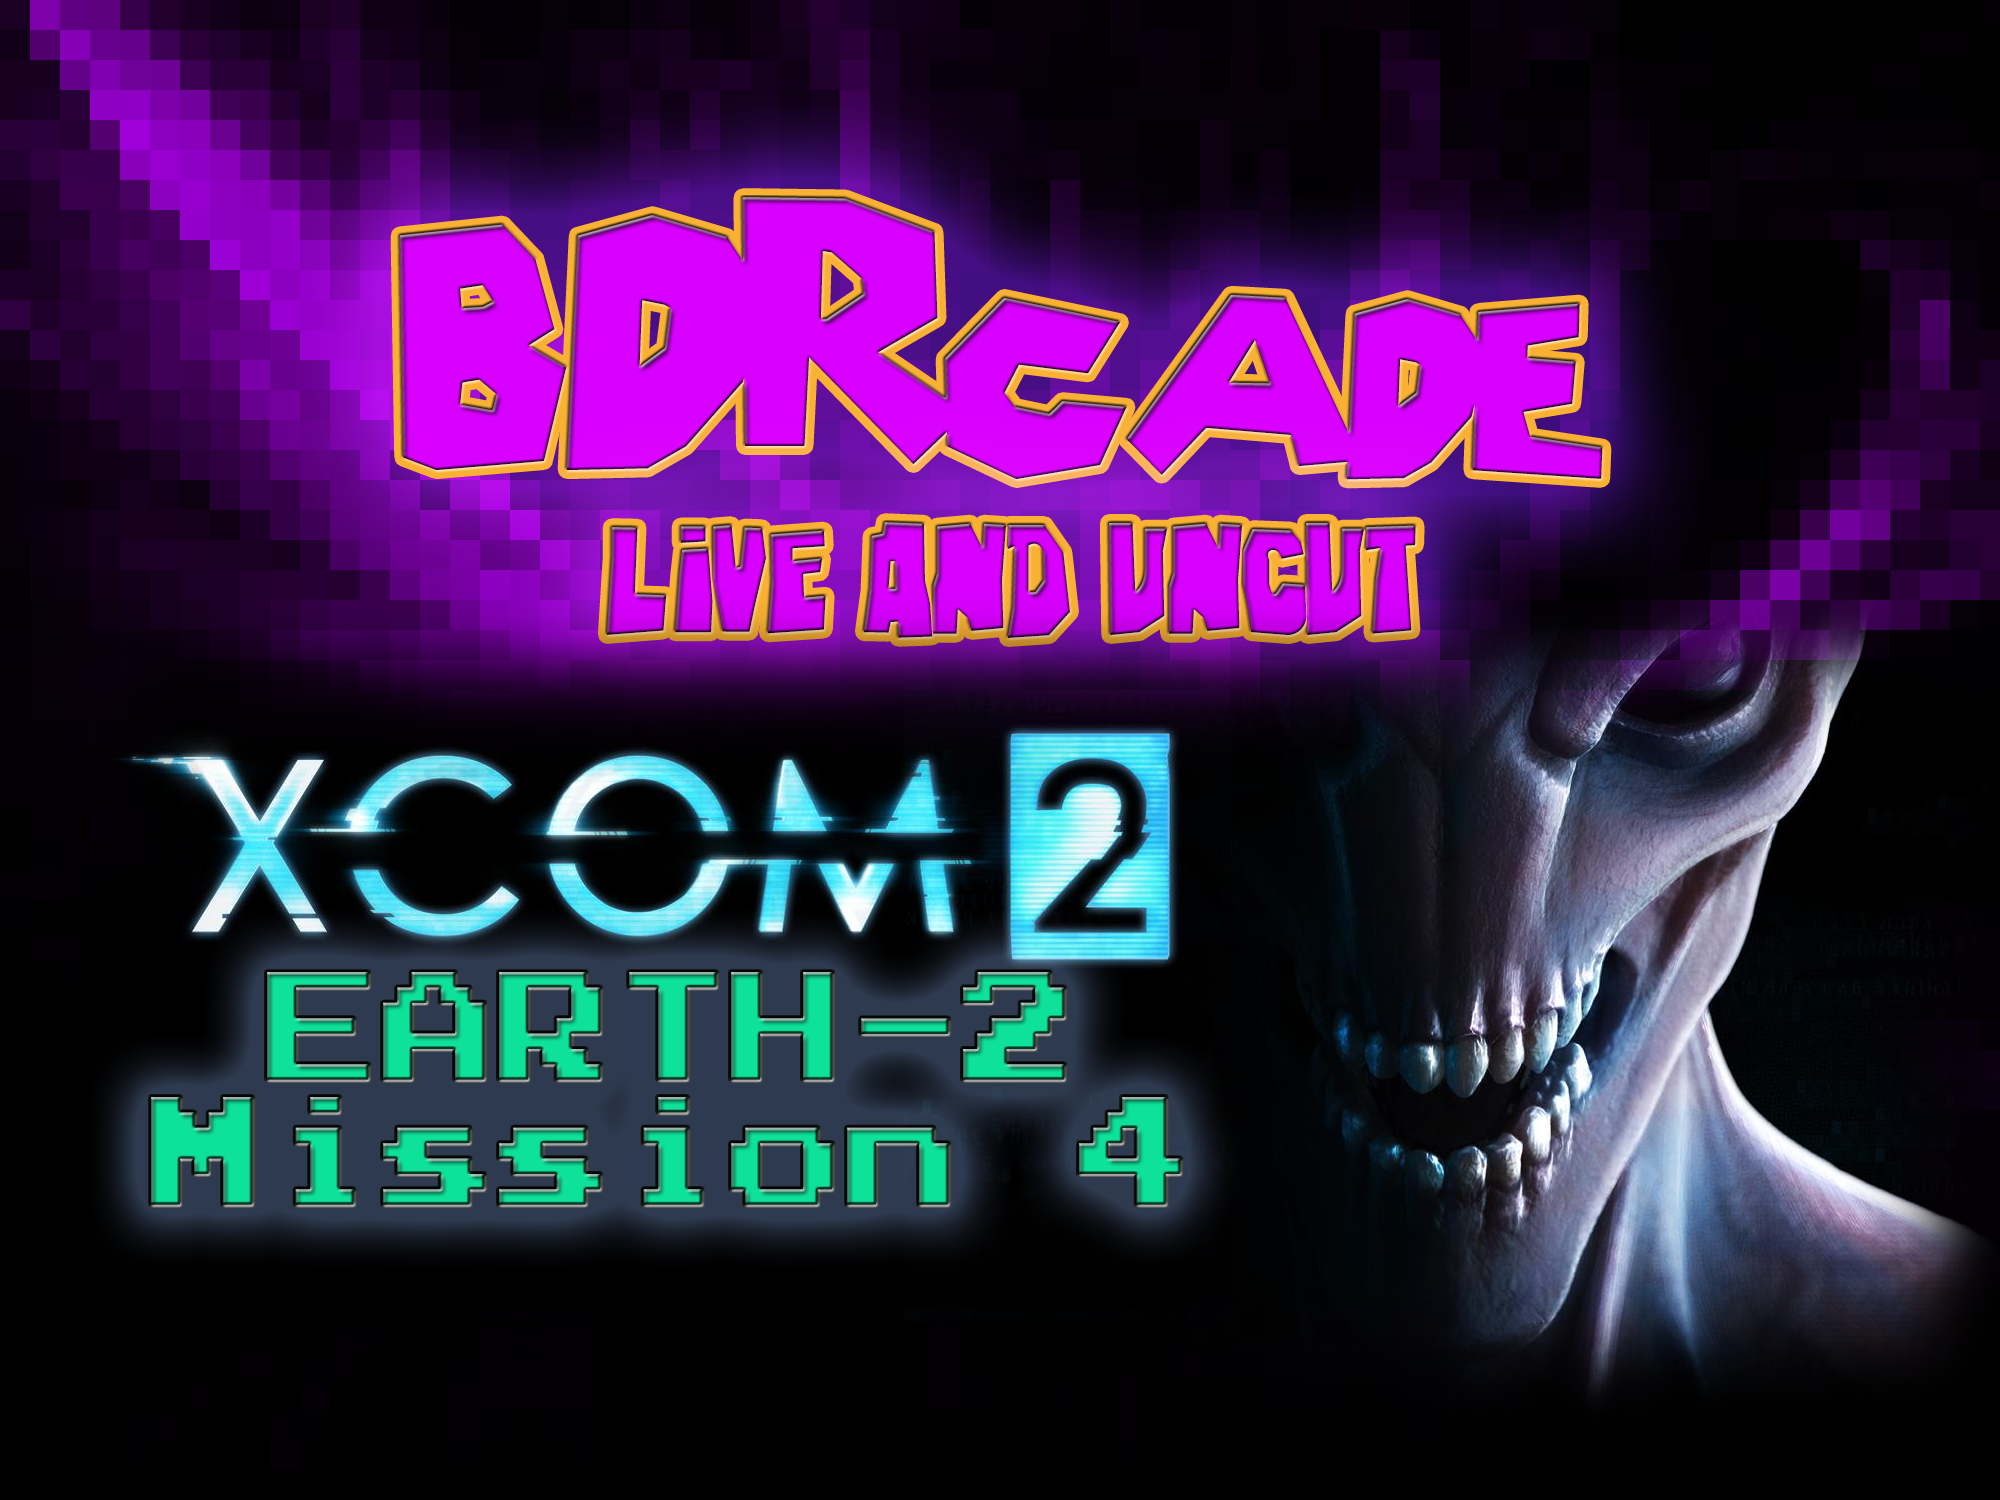 XCOM 2 (Earth-2) : Mission 4 – A BDRcade Live Stream